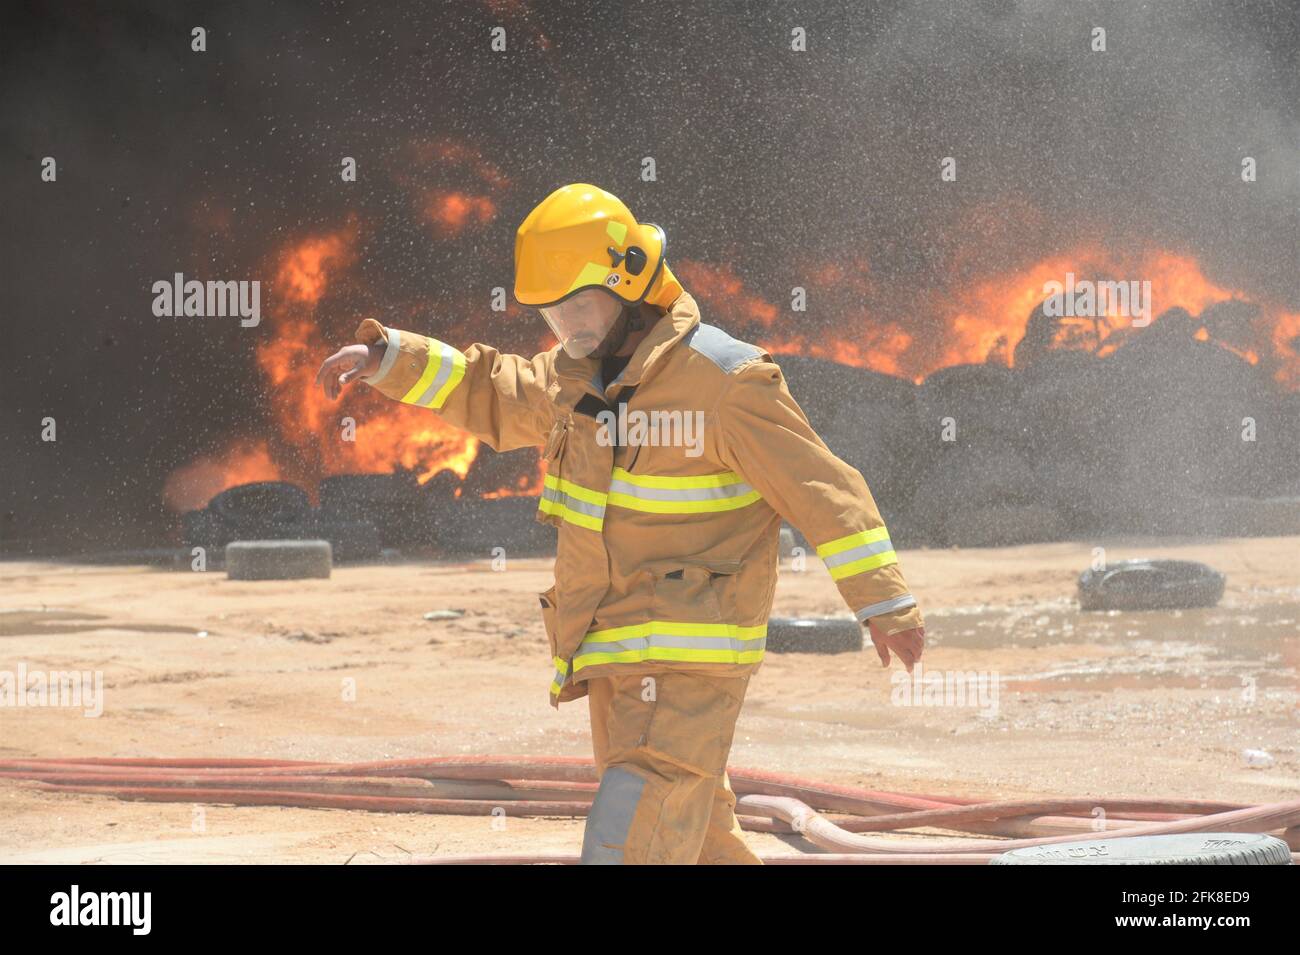 Jahra, Kuwait. April 2021. Ein Feuerwehrmann geht in der Nähe eines Feuerglafens auf einem Reifenhof in Jahra Governorate, Kuwait, 29. April 2021. Am Donnerstag brach auf dem Reifenhof ein Feuer aus, es wurden keine Verletzten gemeldet. Quelle: Asad/Xinhua/Alamy Live News Stockfoto